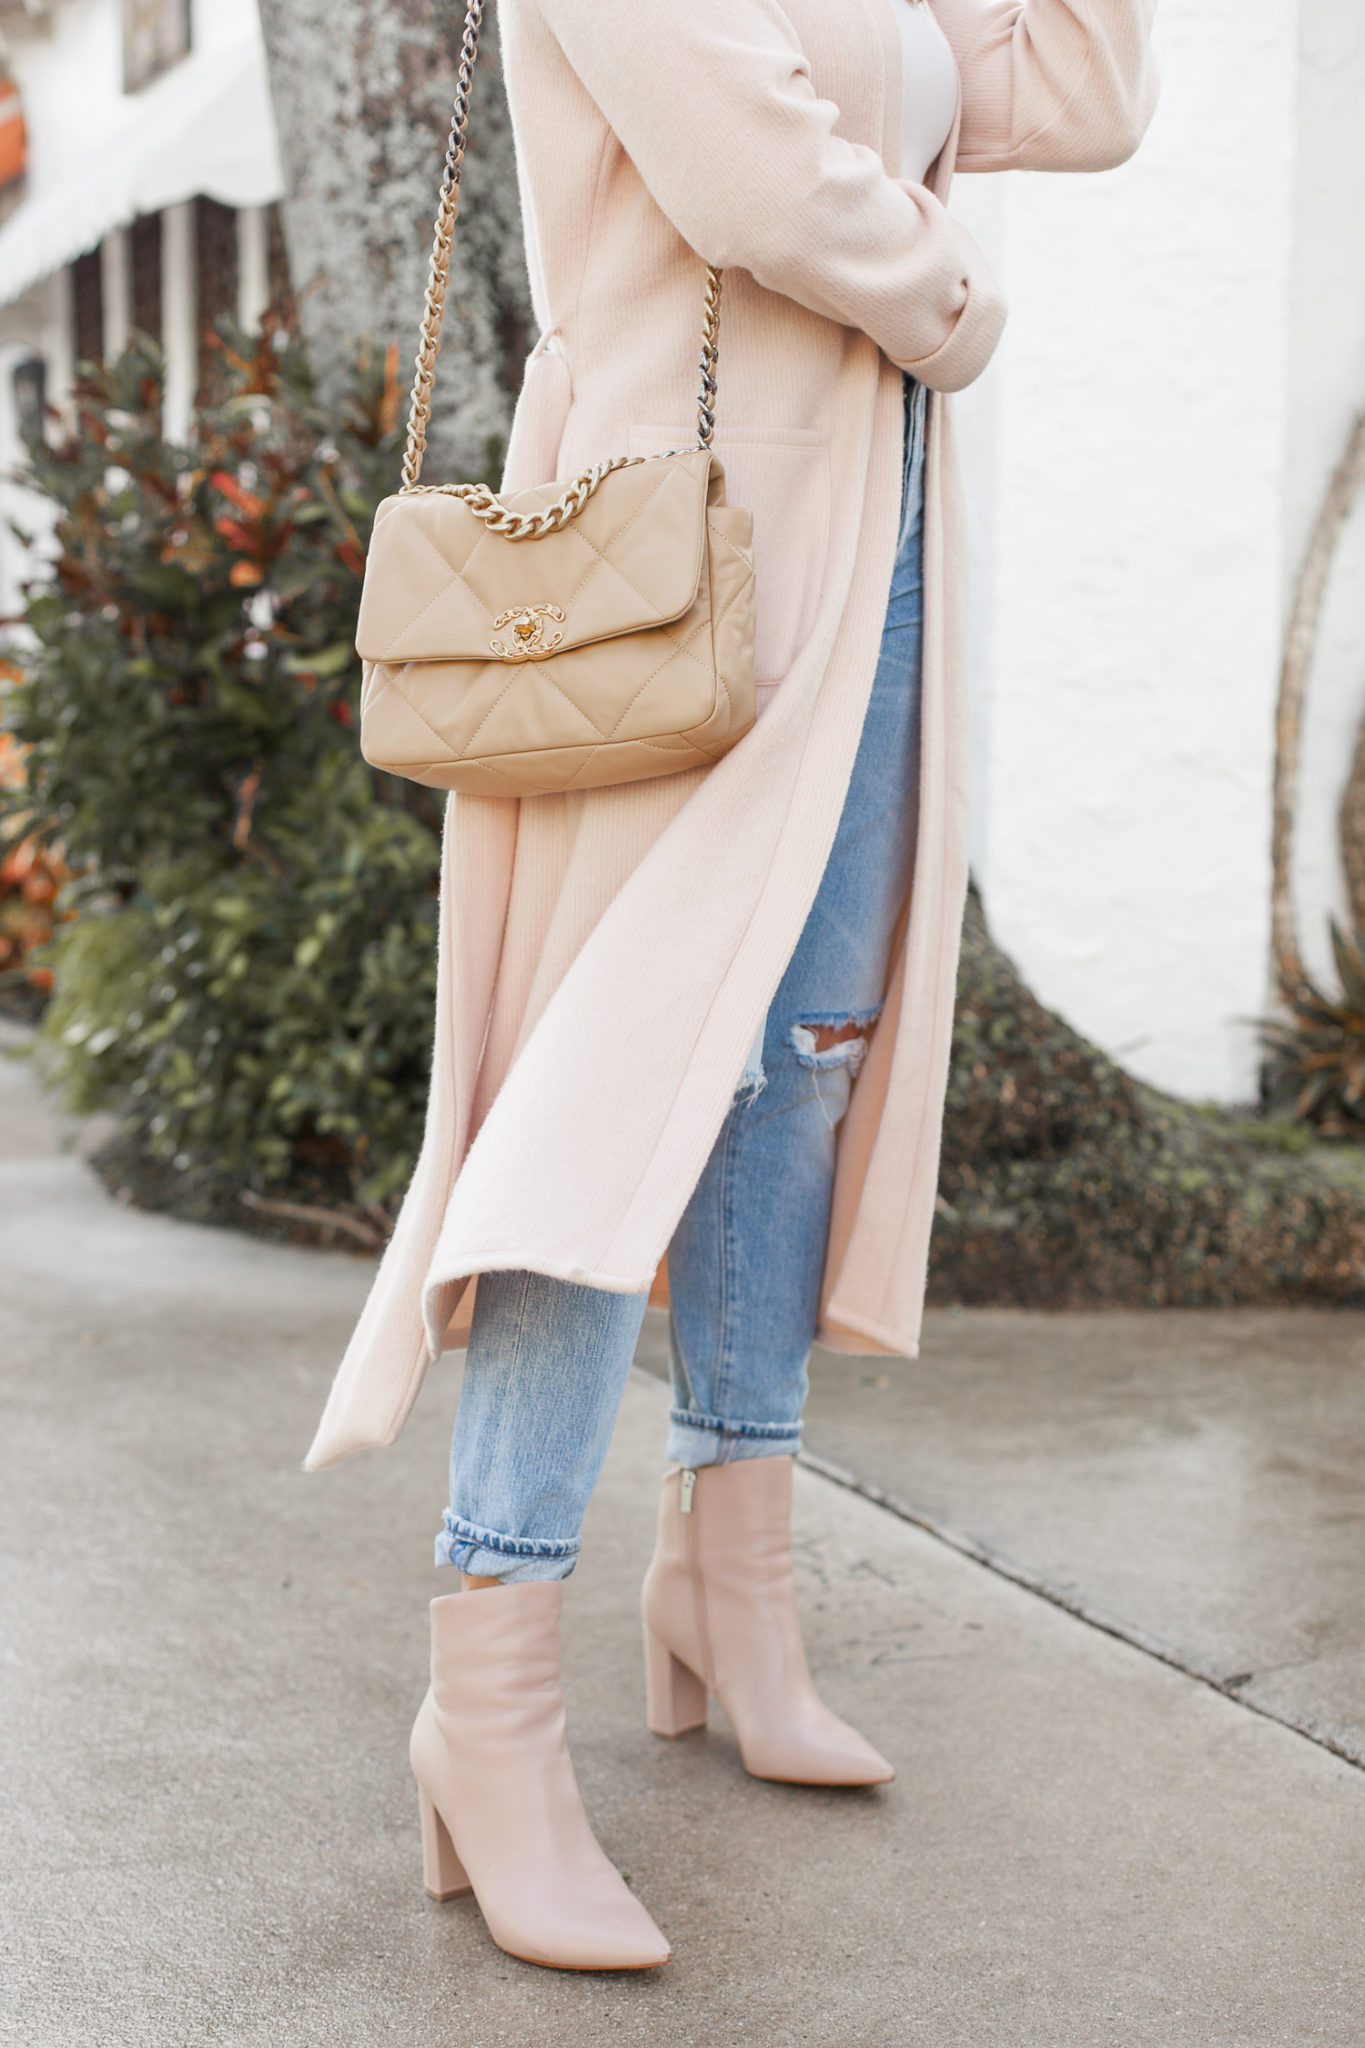 Chanel Bag Ideas A Glam Lifestyle Fashion & Blog